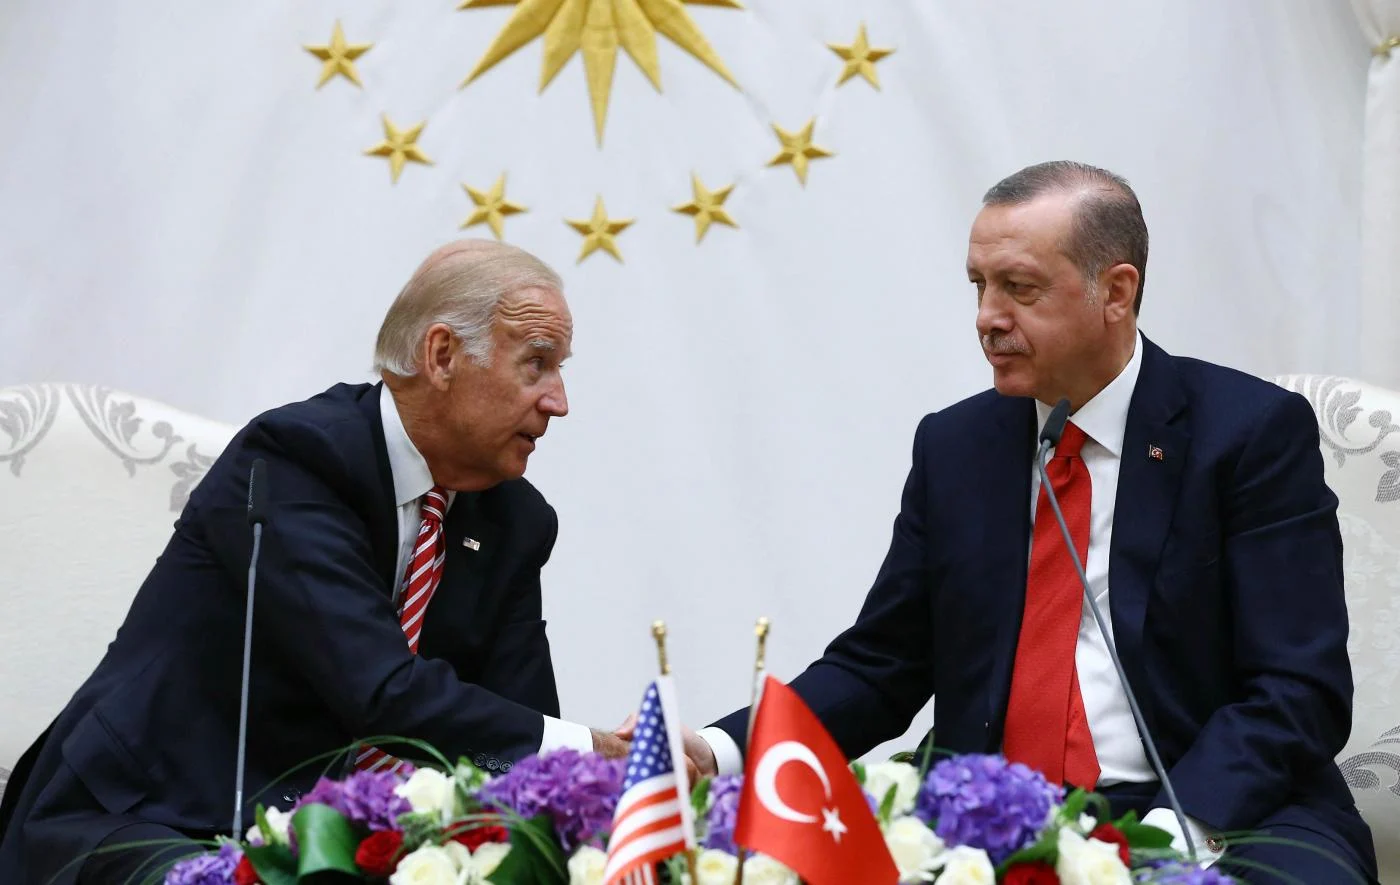 Türkiye'nin Biden'a yanıtına bir analiz de Reuters'tan: 'Erdoğan gerilimi artırmaktan kaçınıyor'